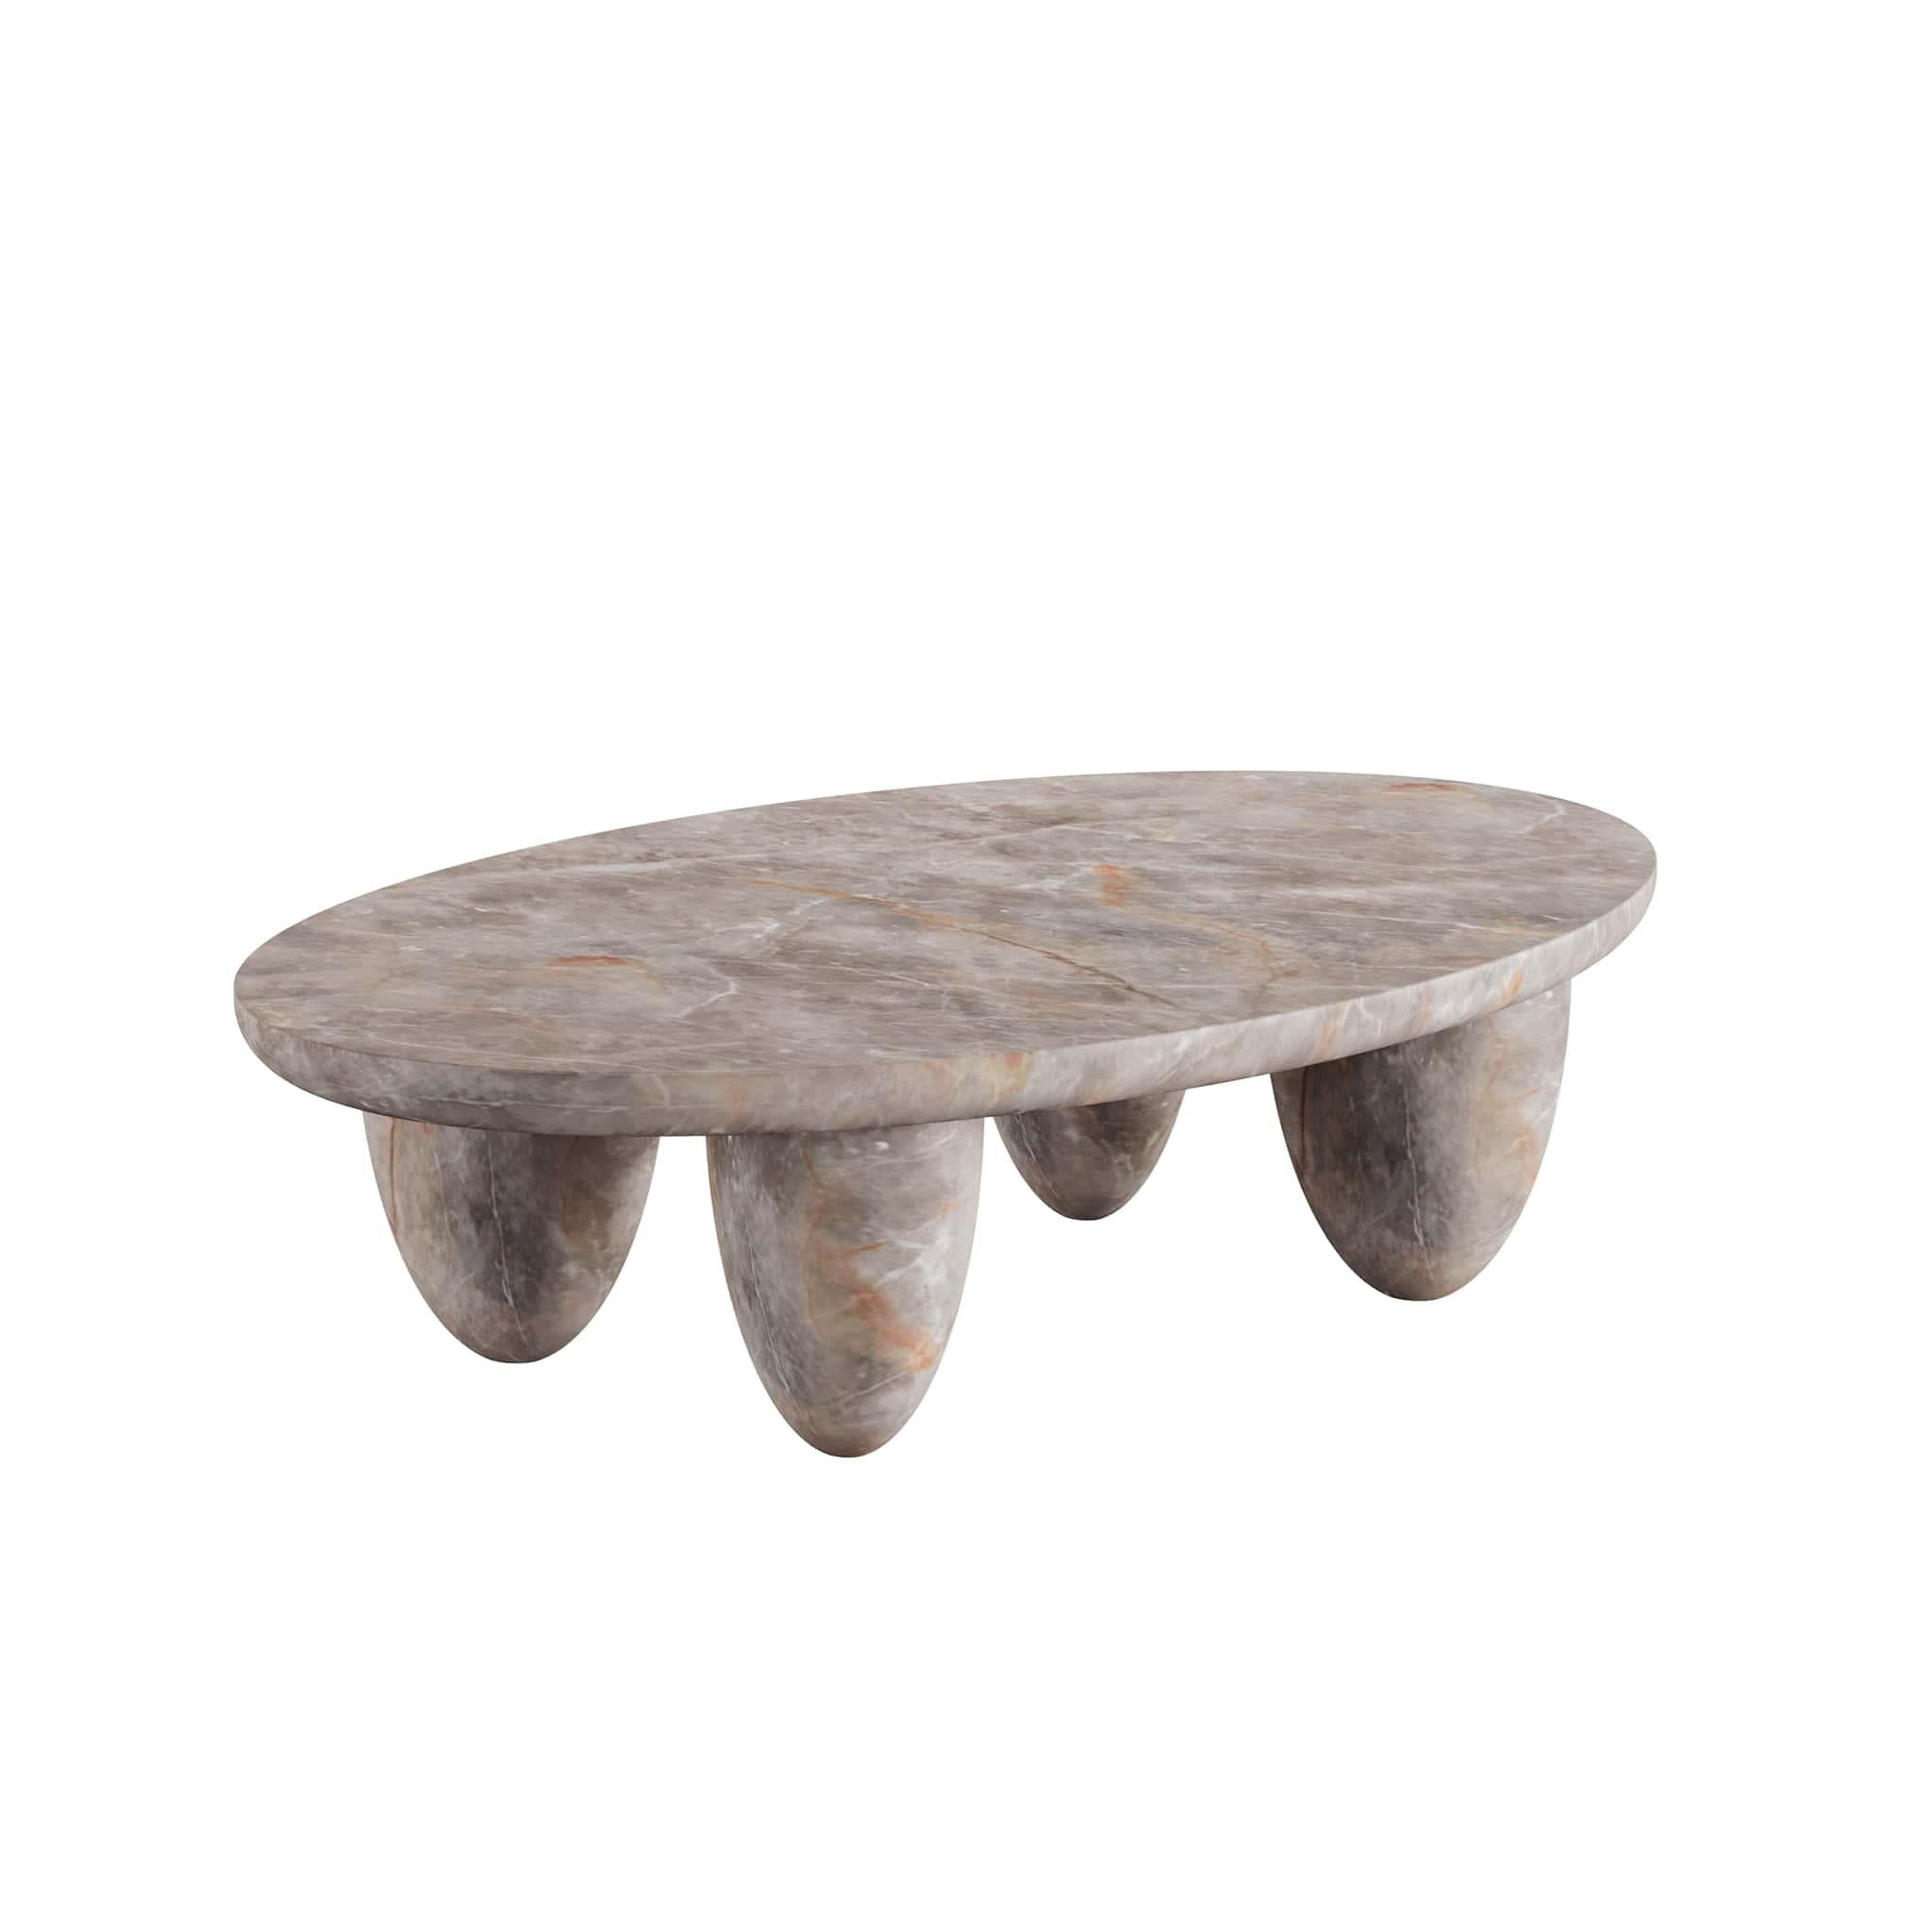 La table centrale Fior Di Bosco de Lunarys est une pièce de design moderne exceptionnelle. L'anatomie voluptueuse et la texture douce de la table centrale d'extérieur sont parfaites pour les projets d'intérieur ou d'extérieur. Définie par une